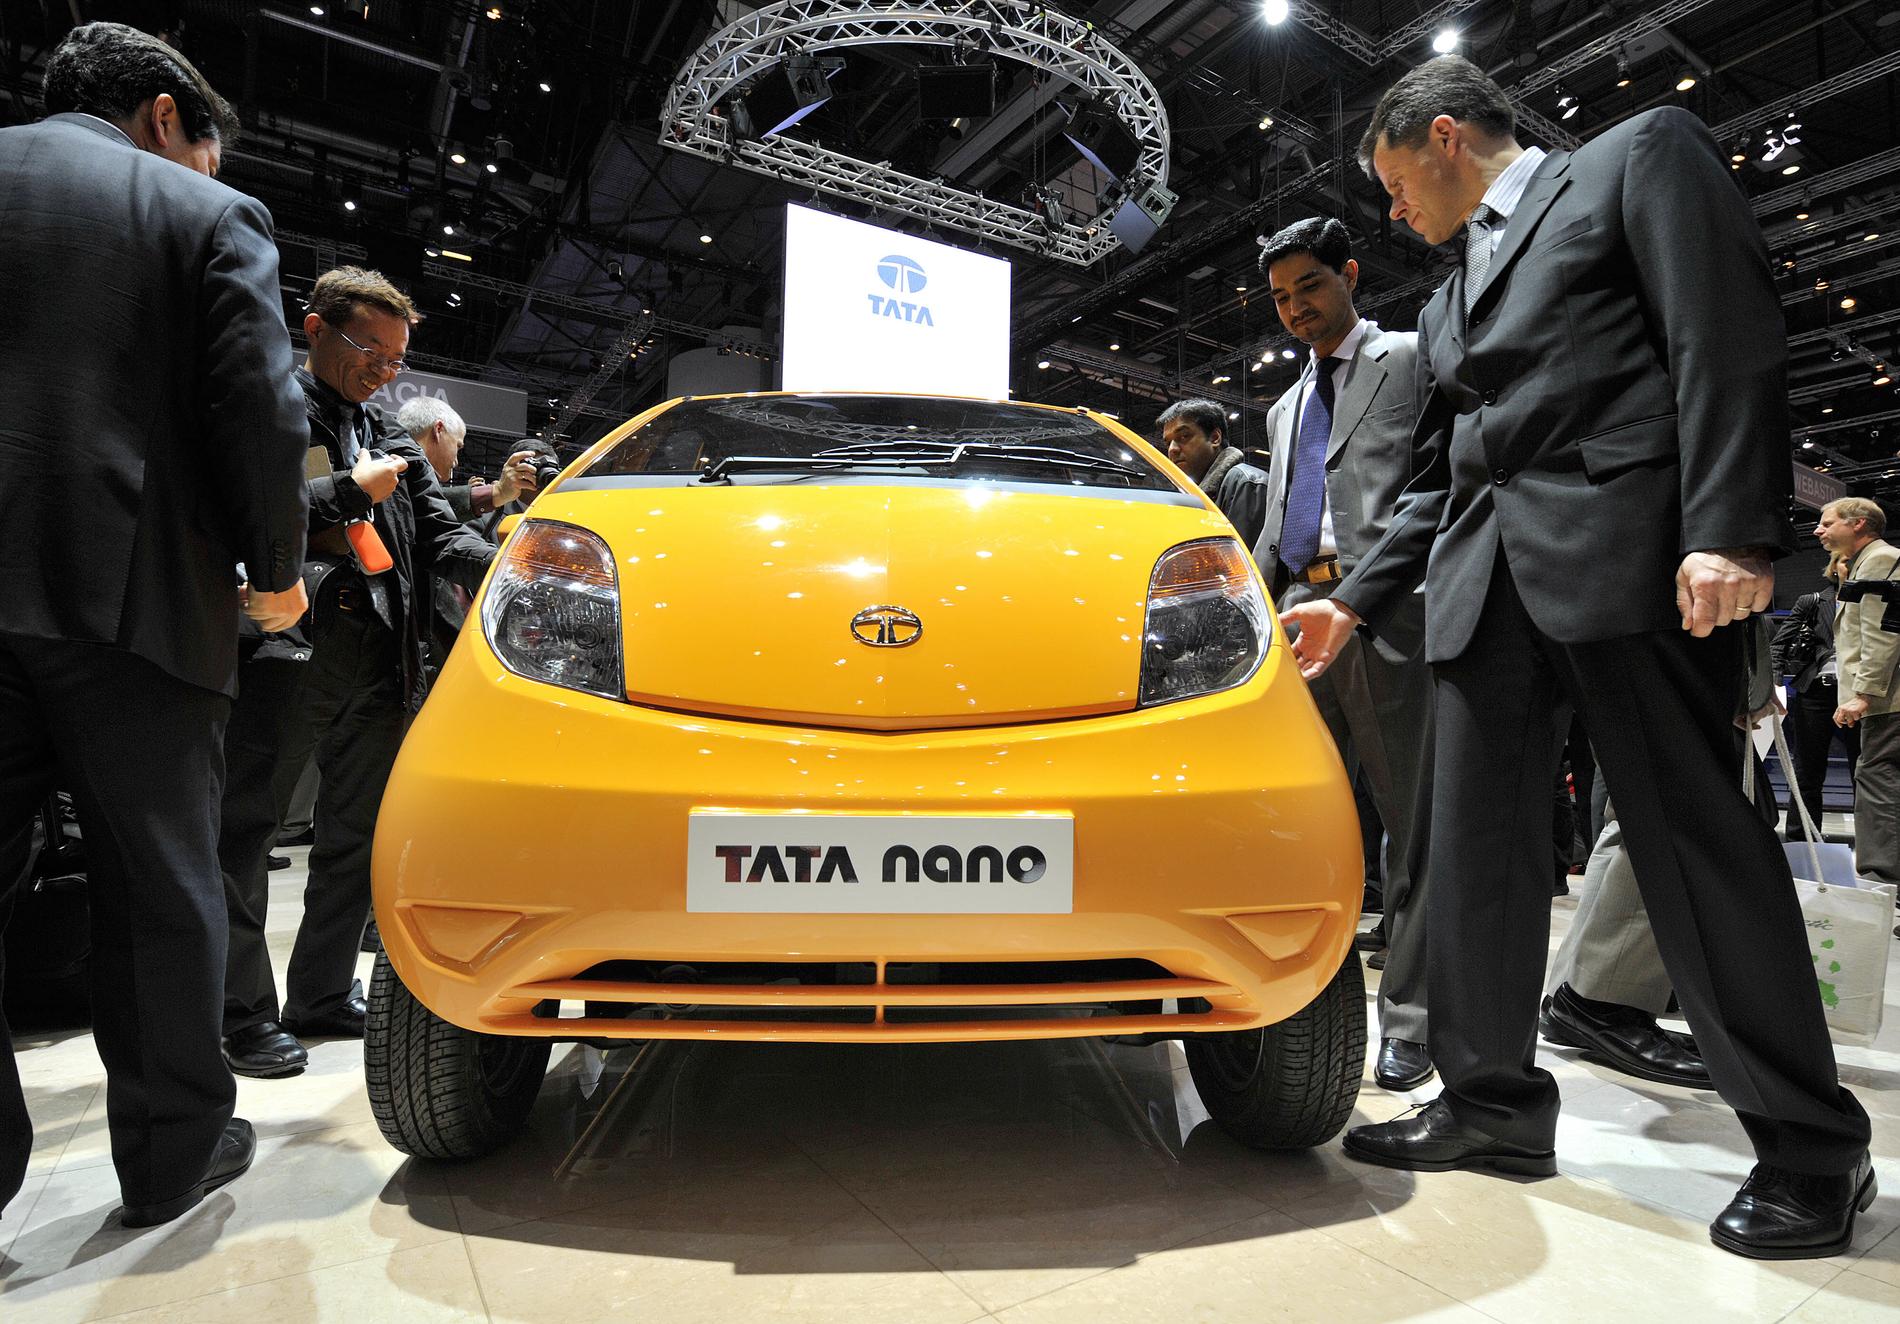 Mässans billigaste bil? Indiska Tata blir din för 2500 dollar.